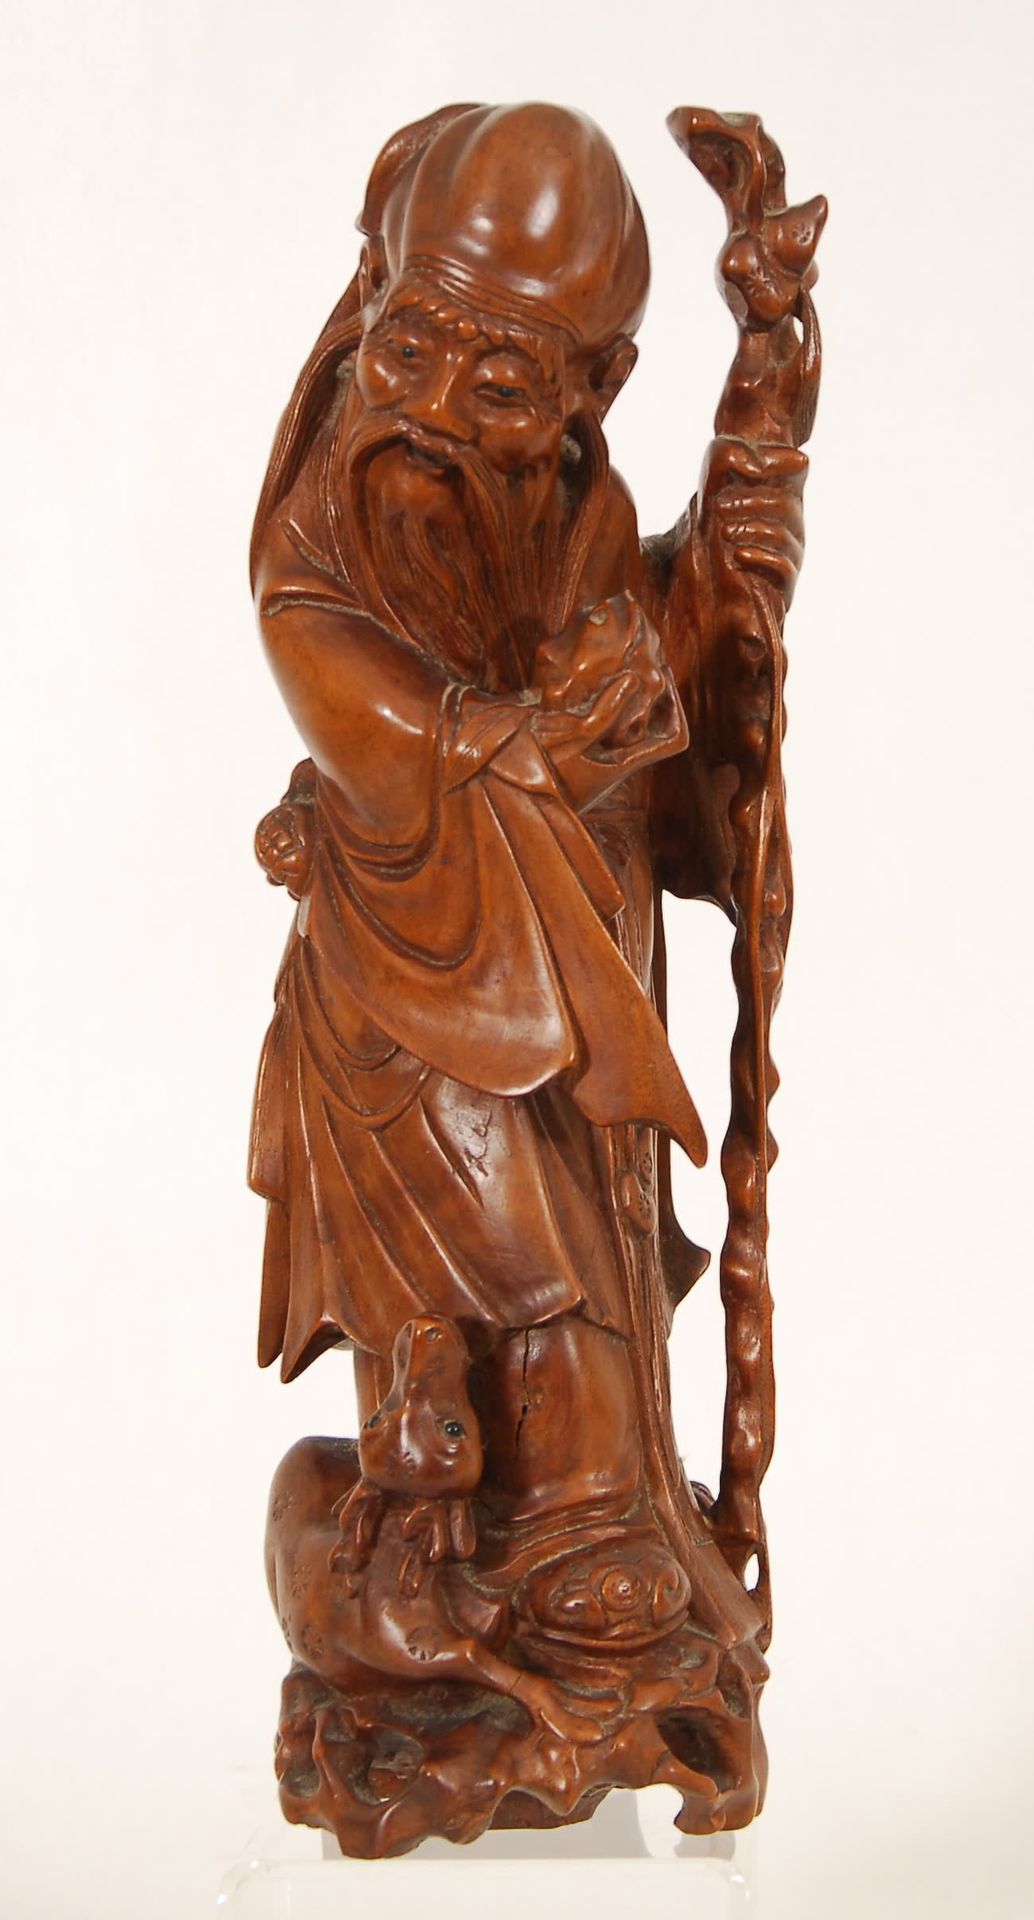 Null 有鹿的寿老
木雕。中国，19世纪末。
，高35厘米。